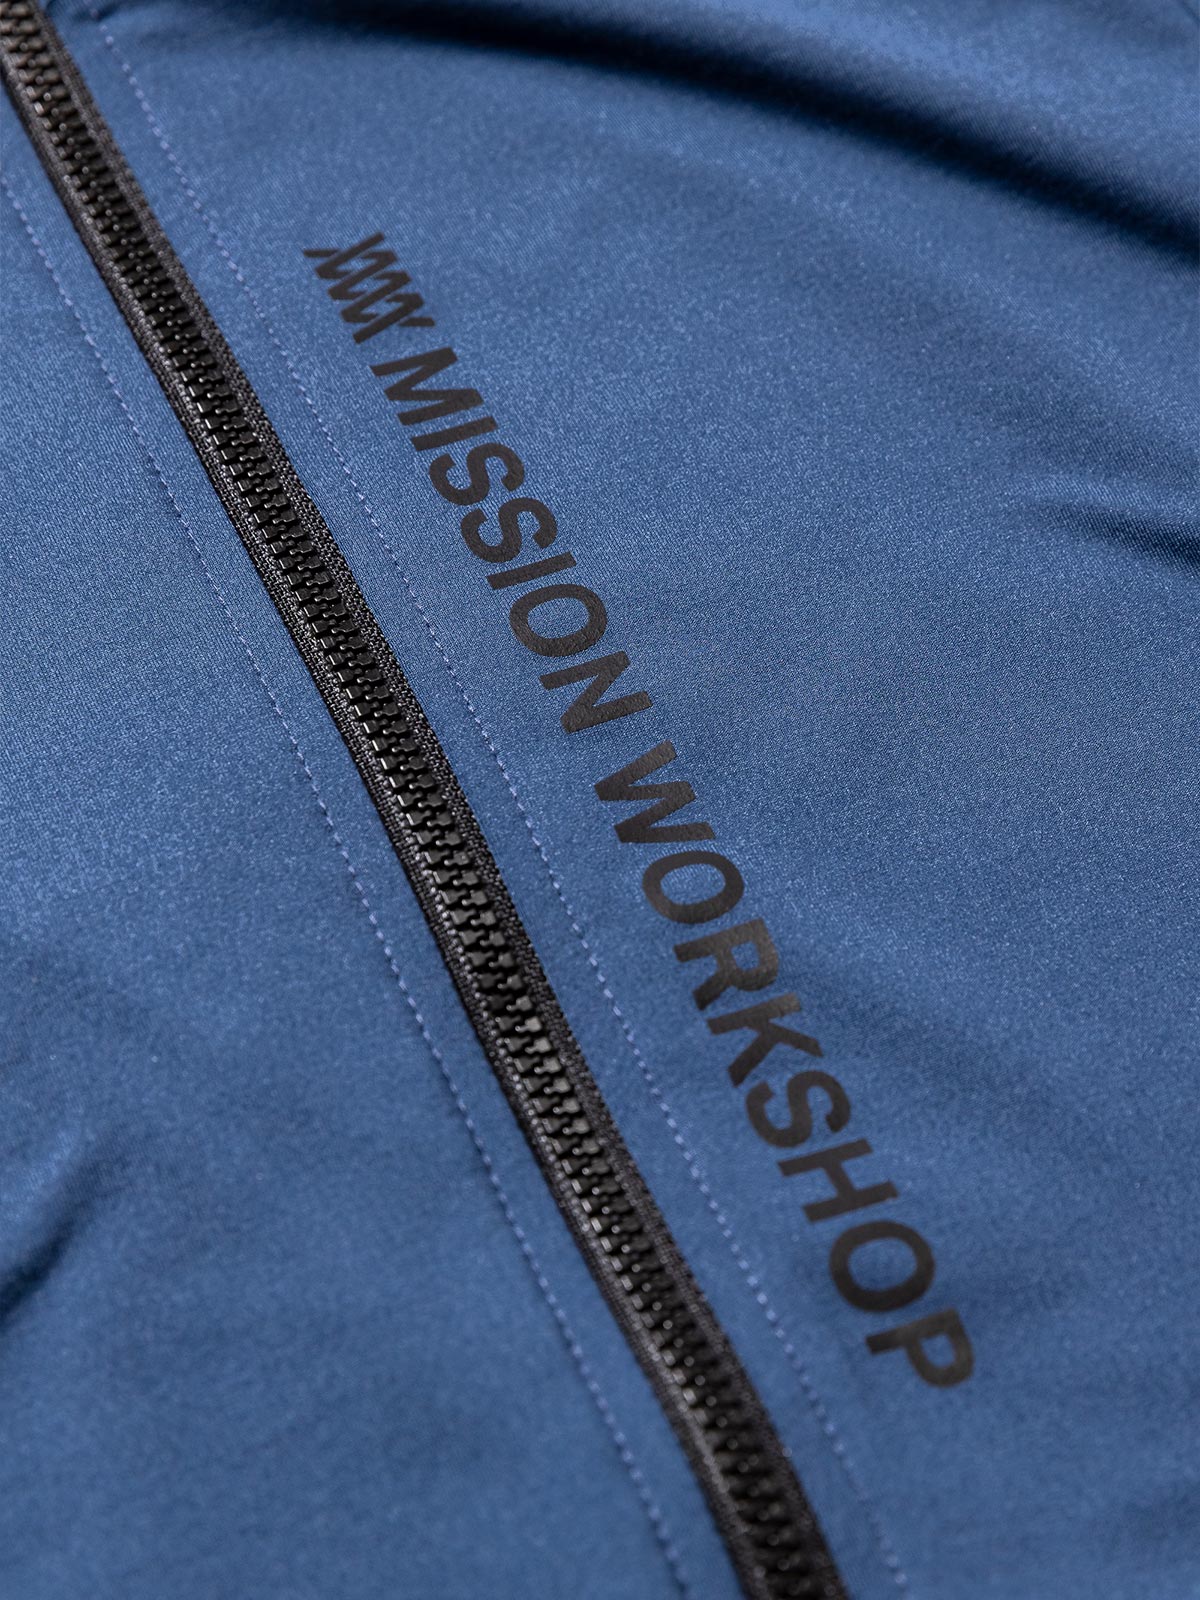 Mission Pro Jersey : LS Women's by Mission Workshop - Säänkestävät laukut ja tekniset vaatteet - San Francisco & Los Angeles - Kestävästi rakennettu - ikuinen takuu